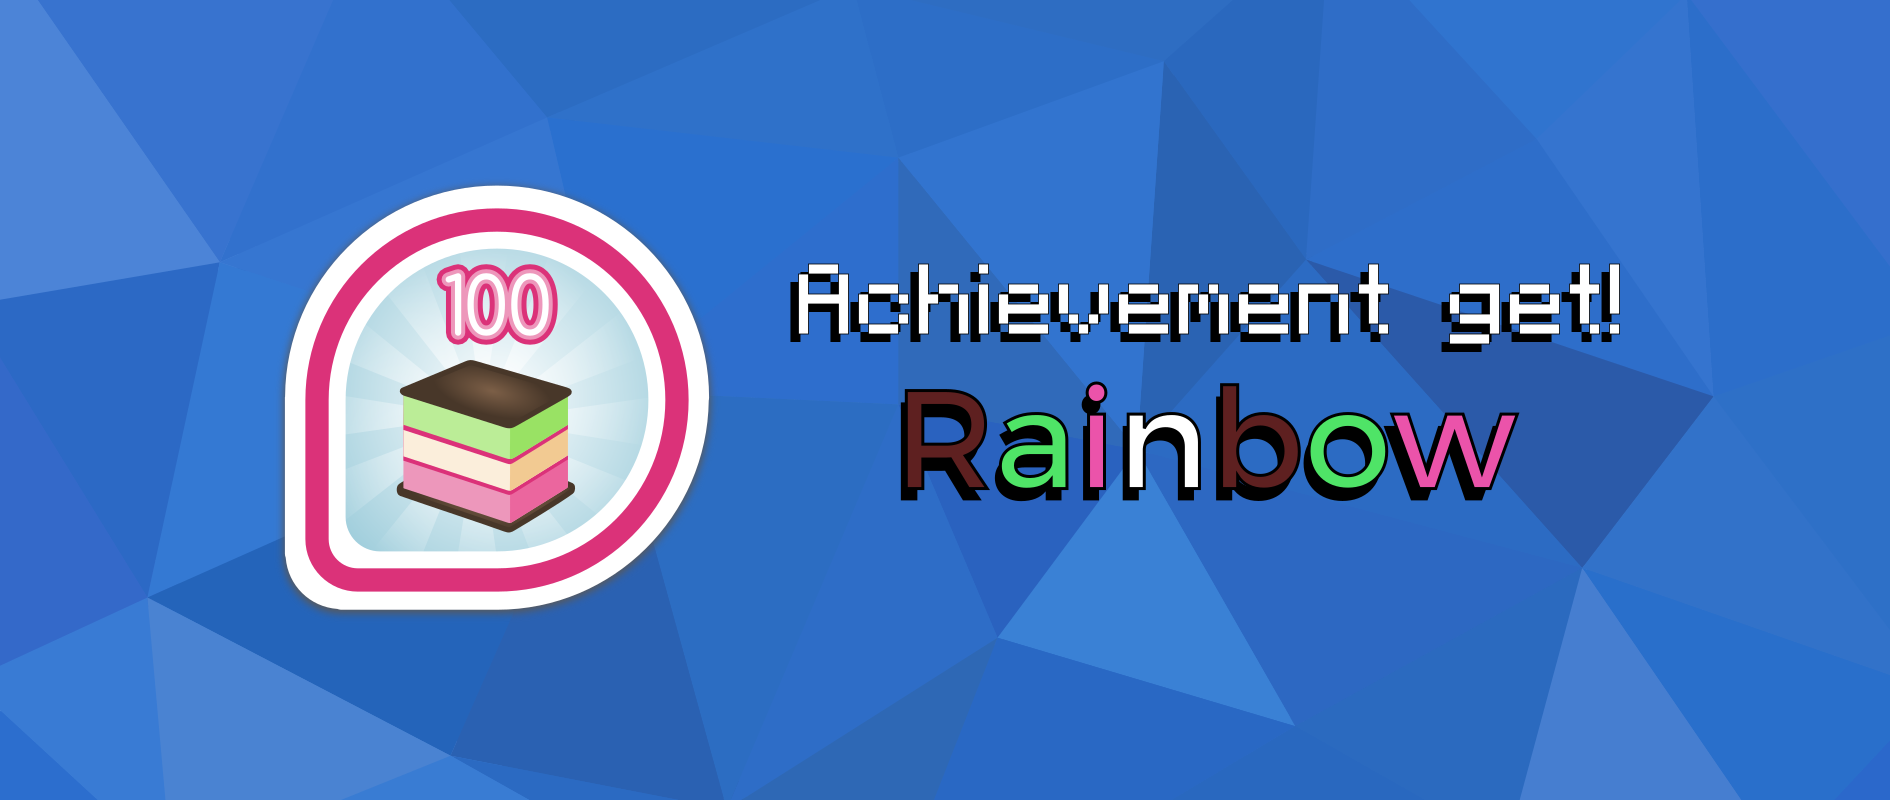 Achievement get: Rainbow!